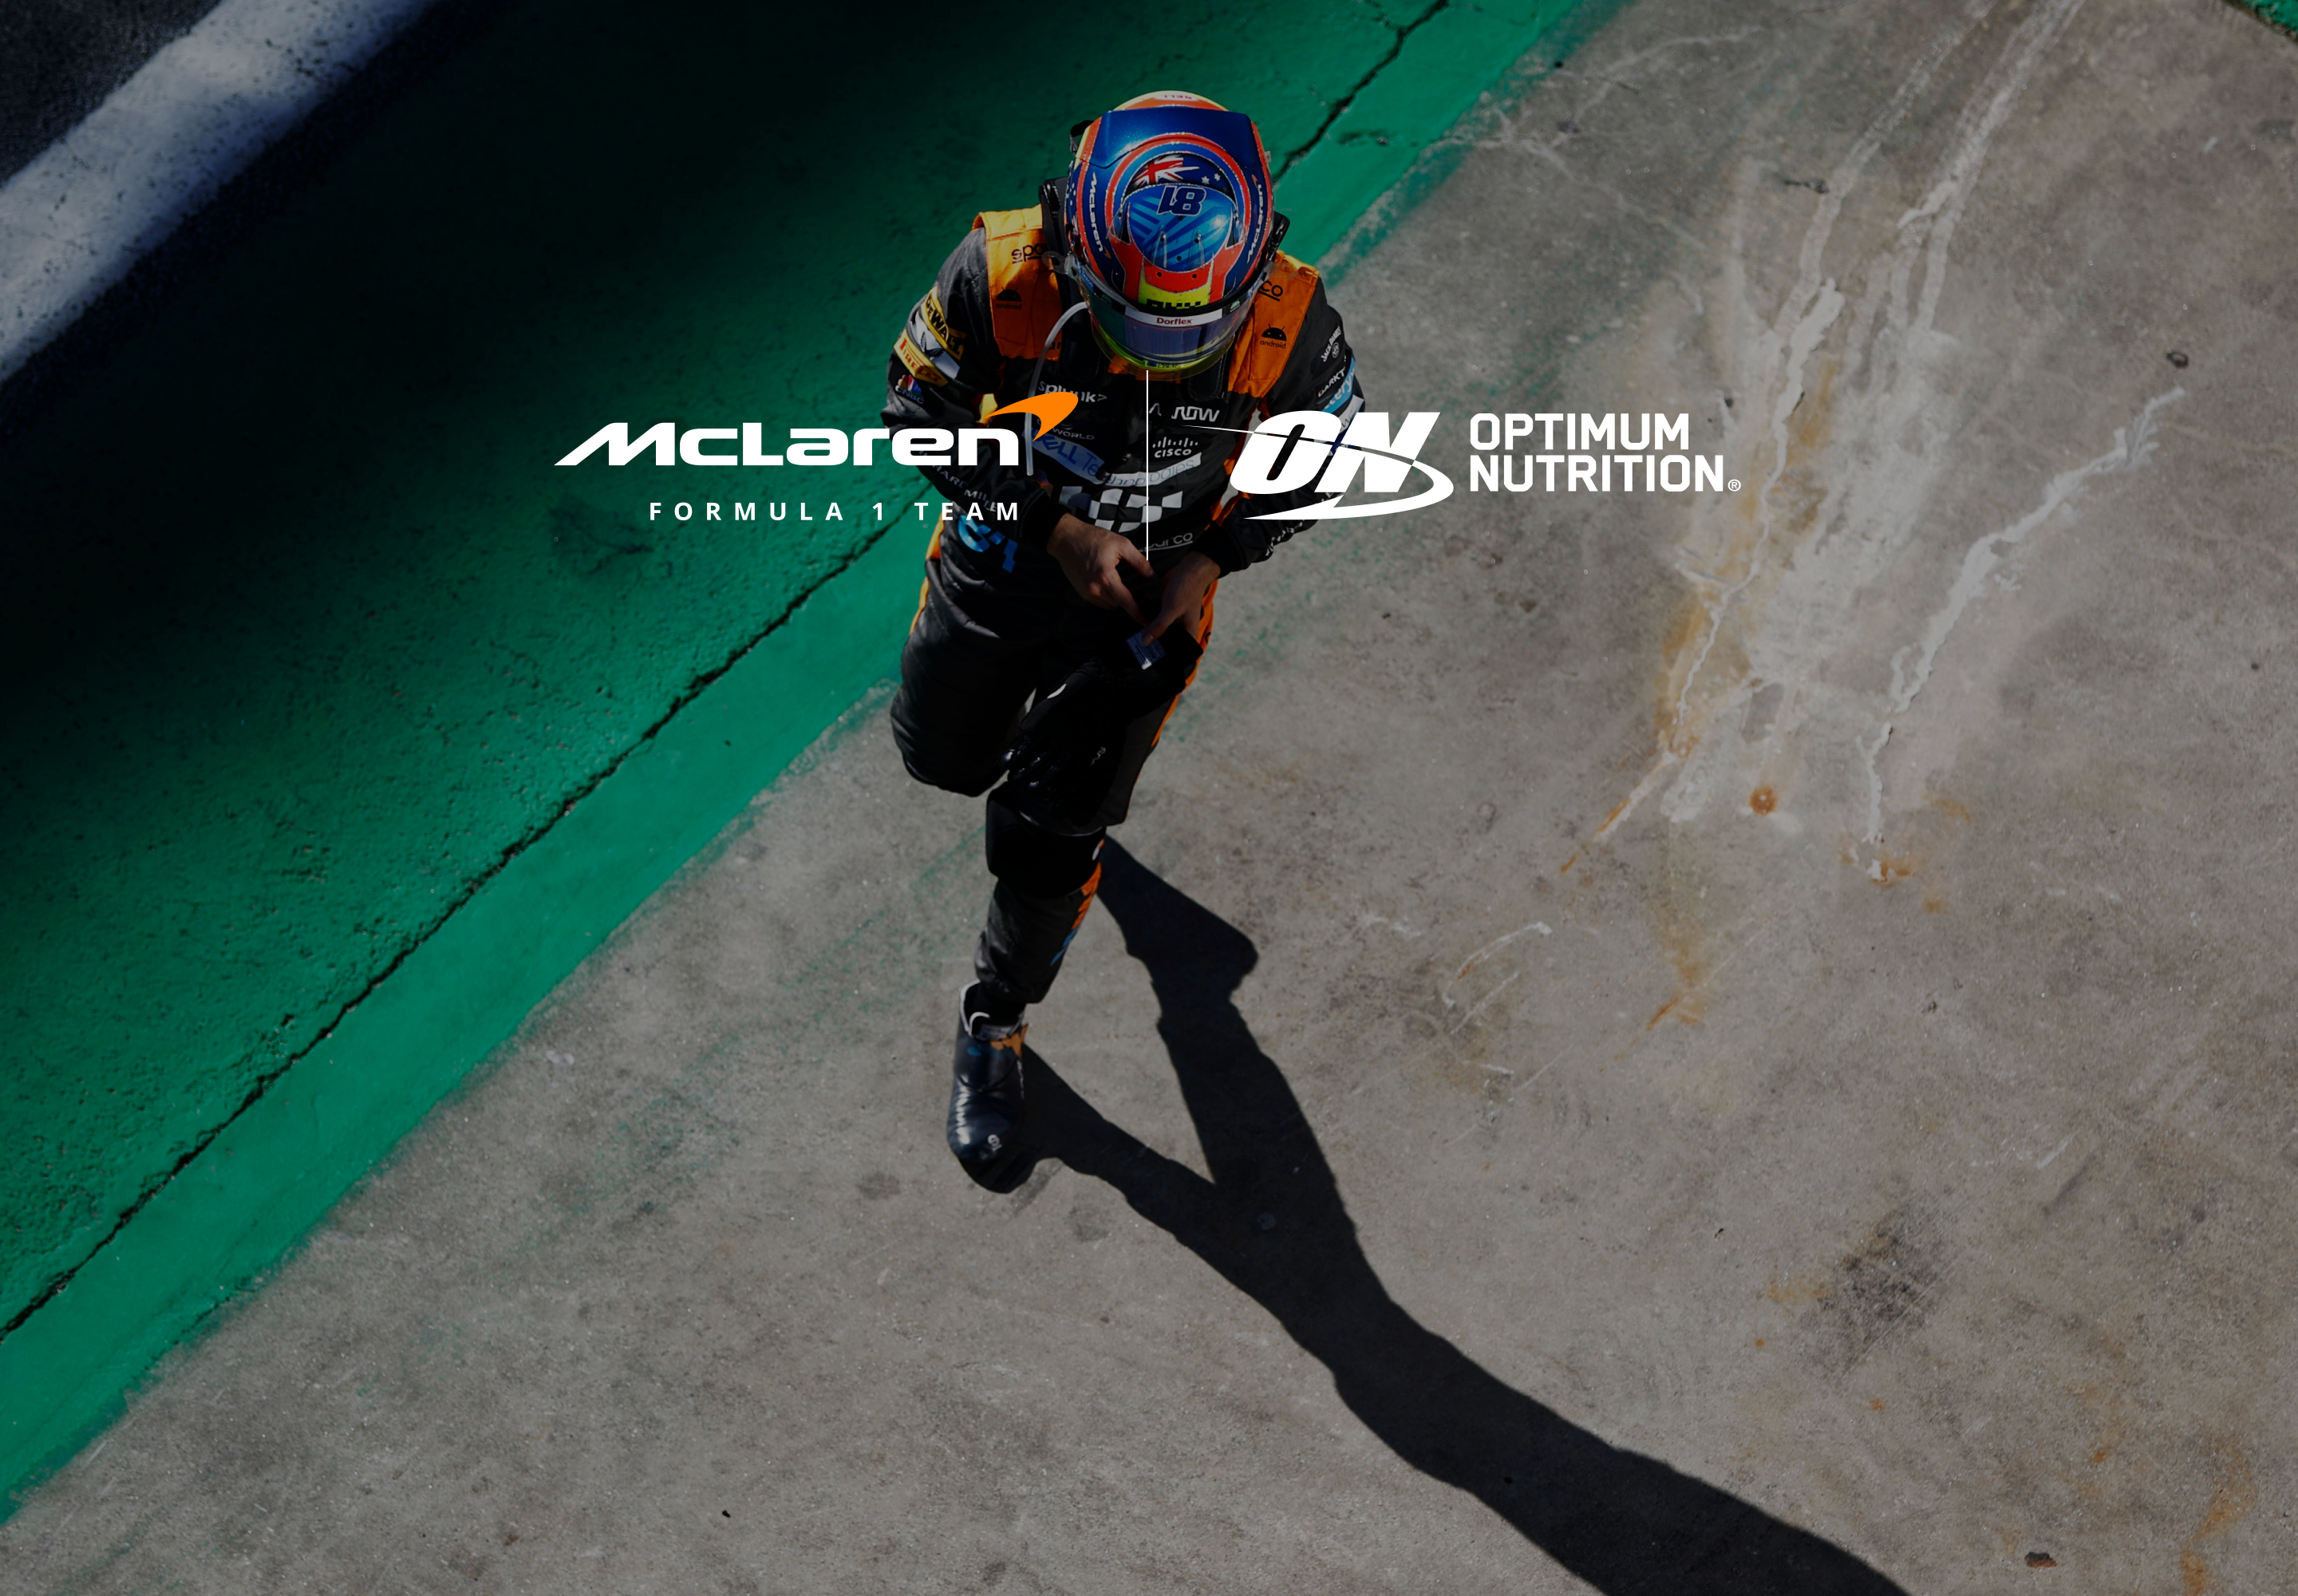 McLaren + Optimum Nutrition